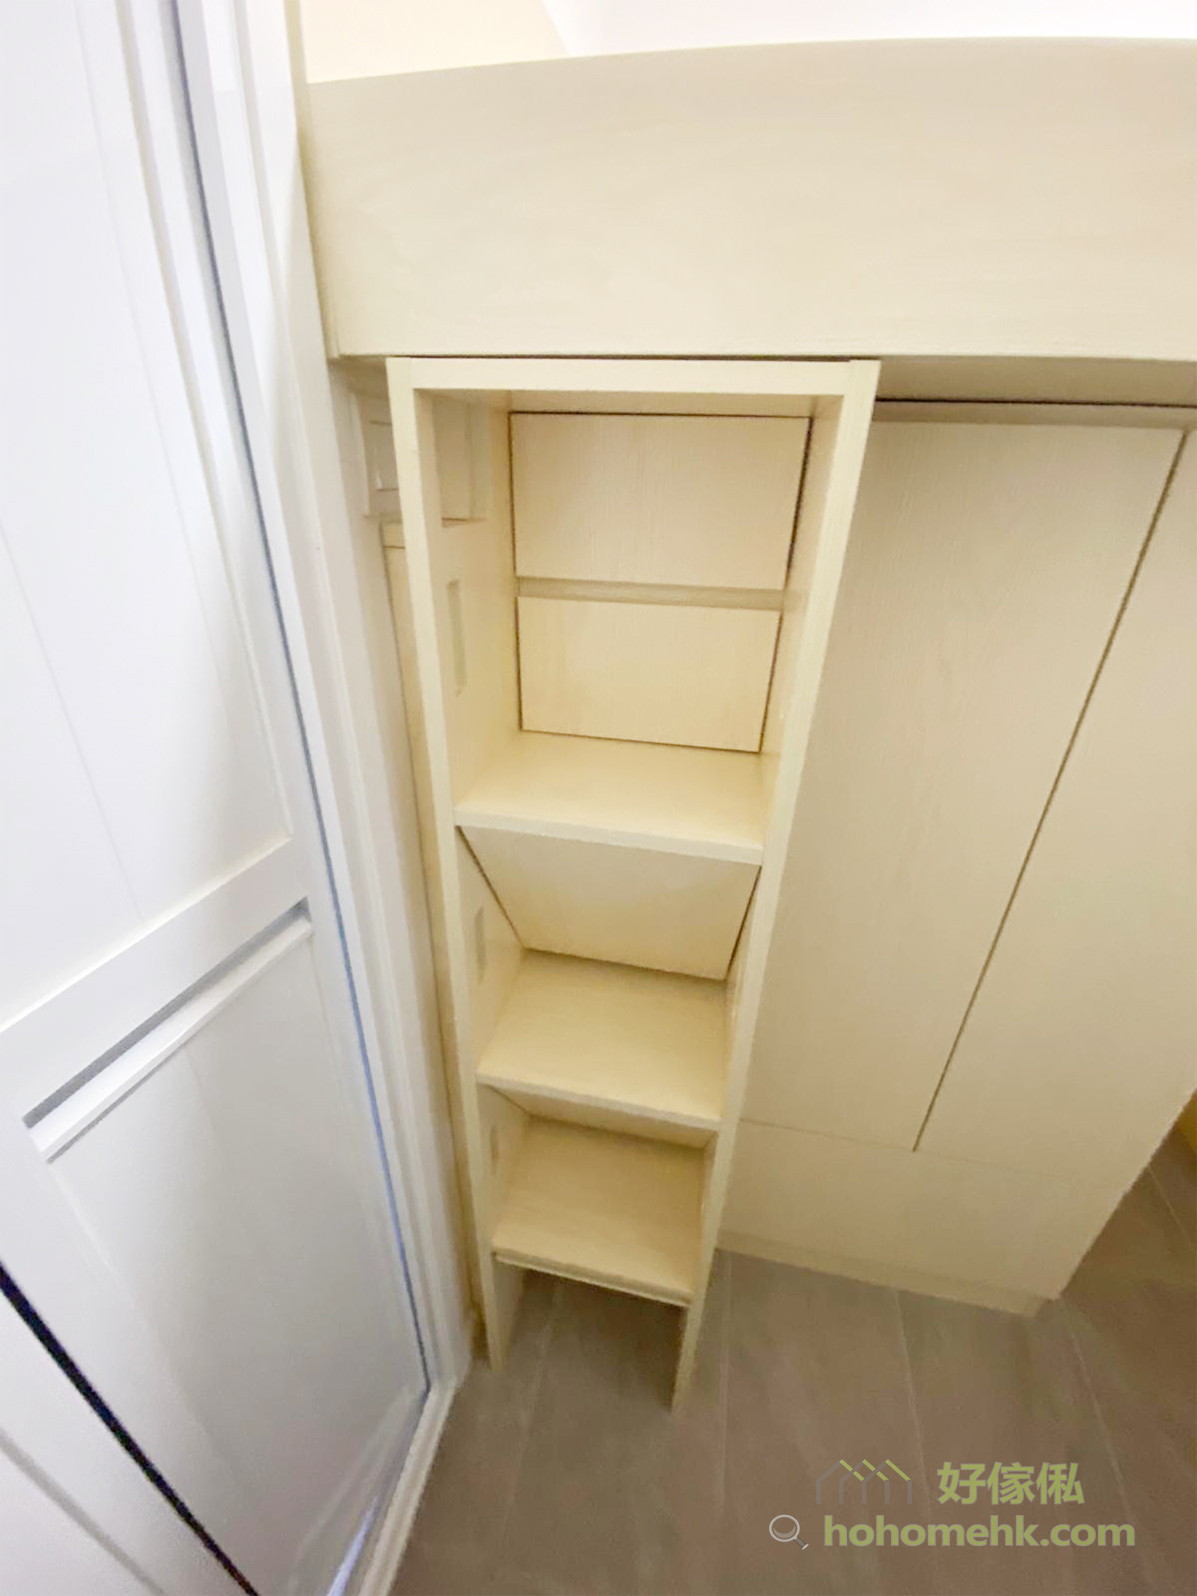 樓梯櫃讓工人姐姐可以輕鬆爬上上格床，同時又有儲物的機能，善用空間